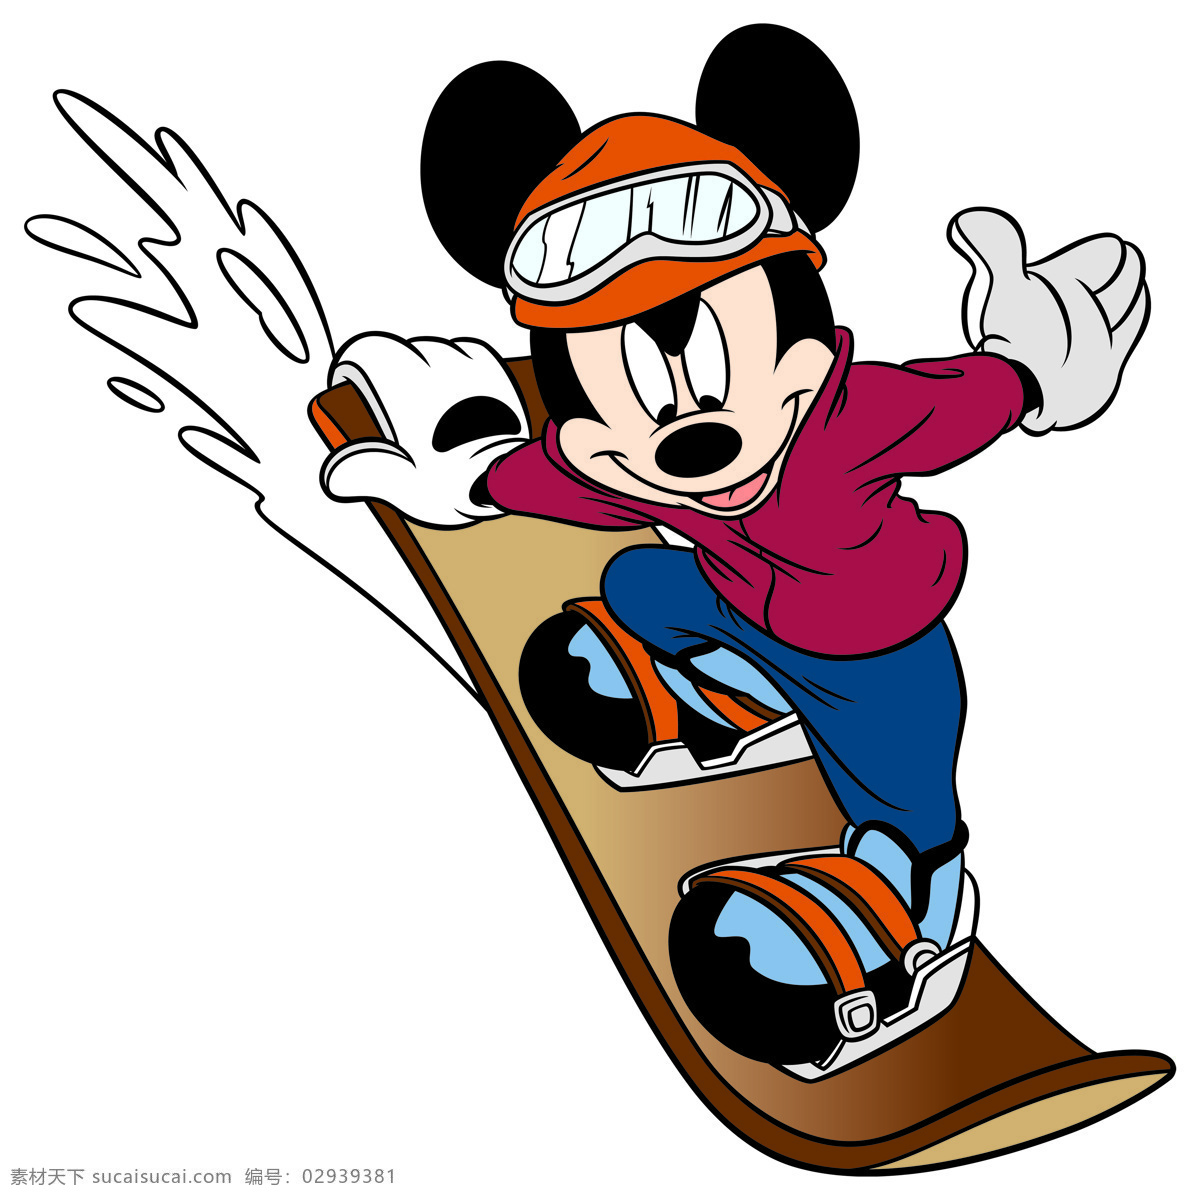 米老鼠 卡通 可爱 迪士尼 卡通动物 米奇 米妮 头像 动漫 乐园 壁画 装饰画 插画 老鼠 滑板 动漫动画 动漫人物